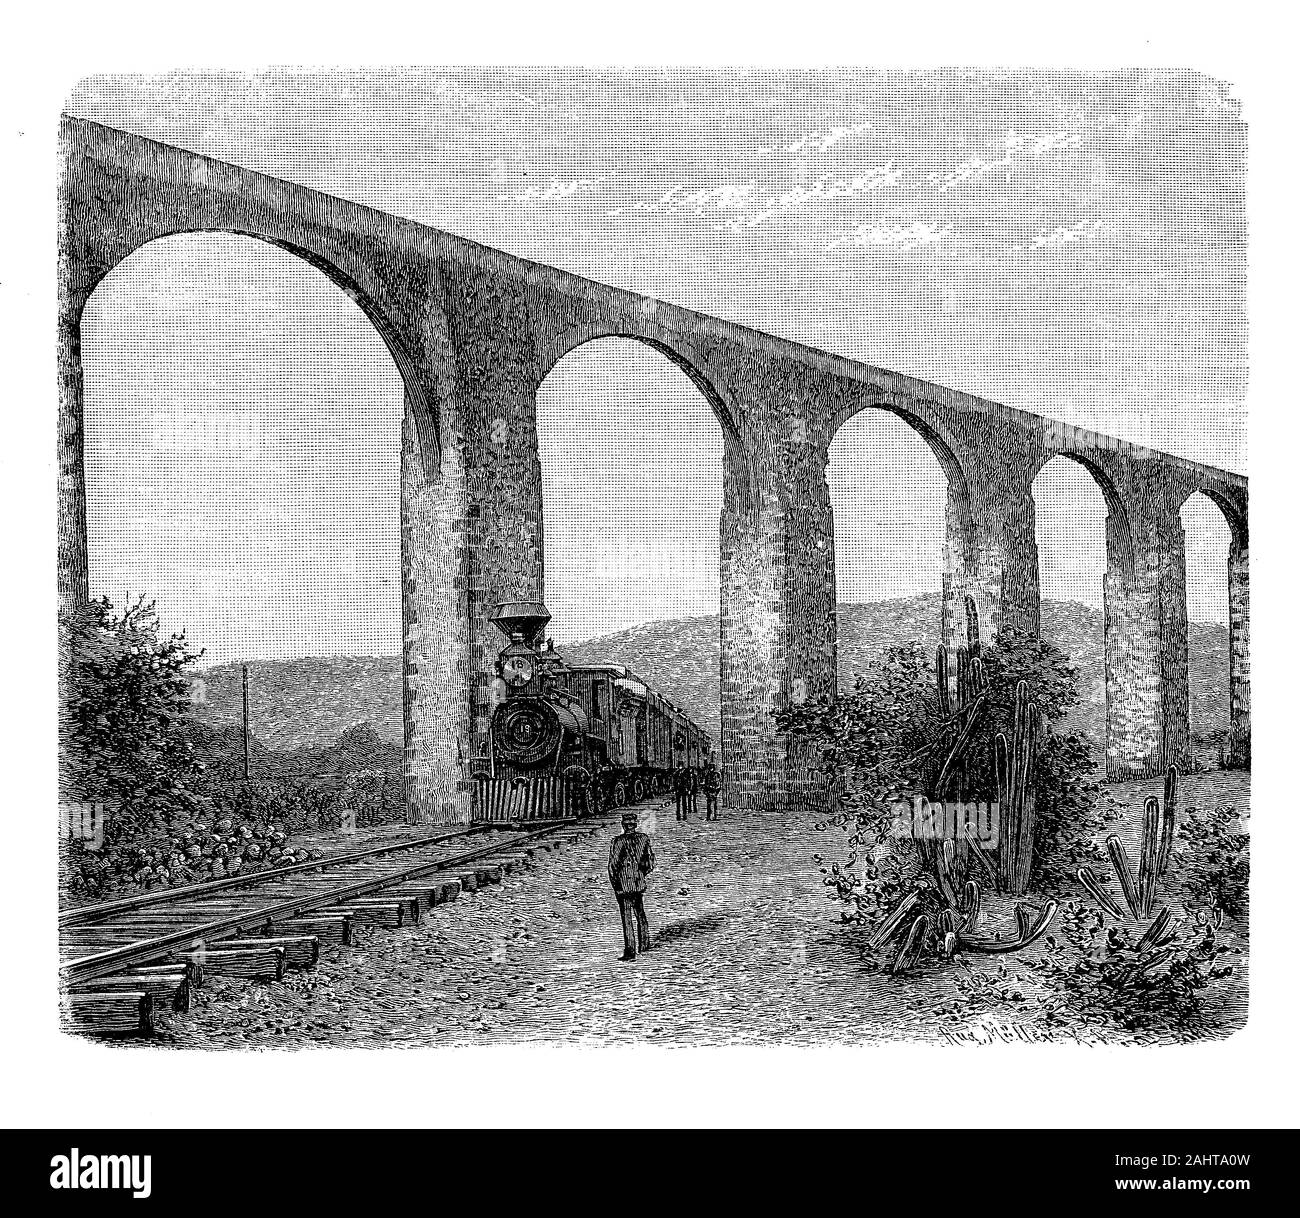 Mexique : la locomotive à vapeur de la Route panaméricaine en passant par les arches de l'Aqueduc de Querétaro 17ème siècle plus de 30 mètres de haut, 19e siècle Banque D'Images